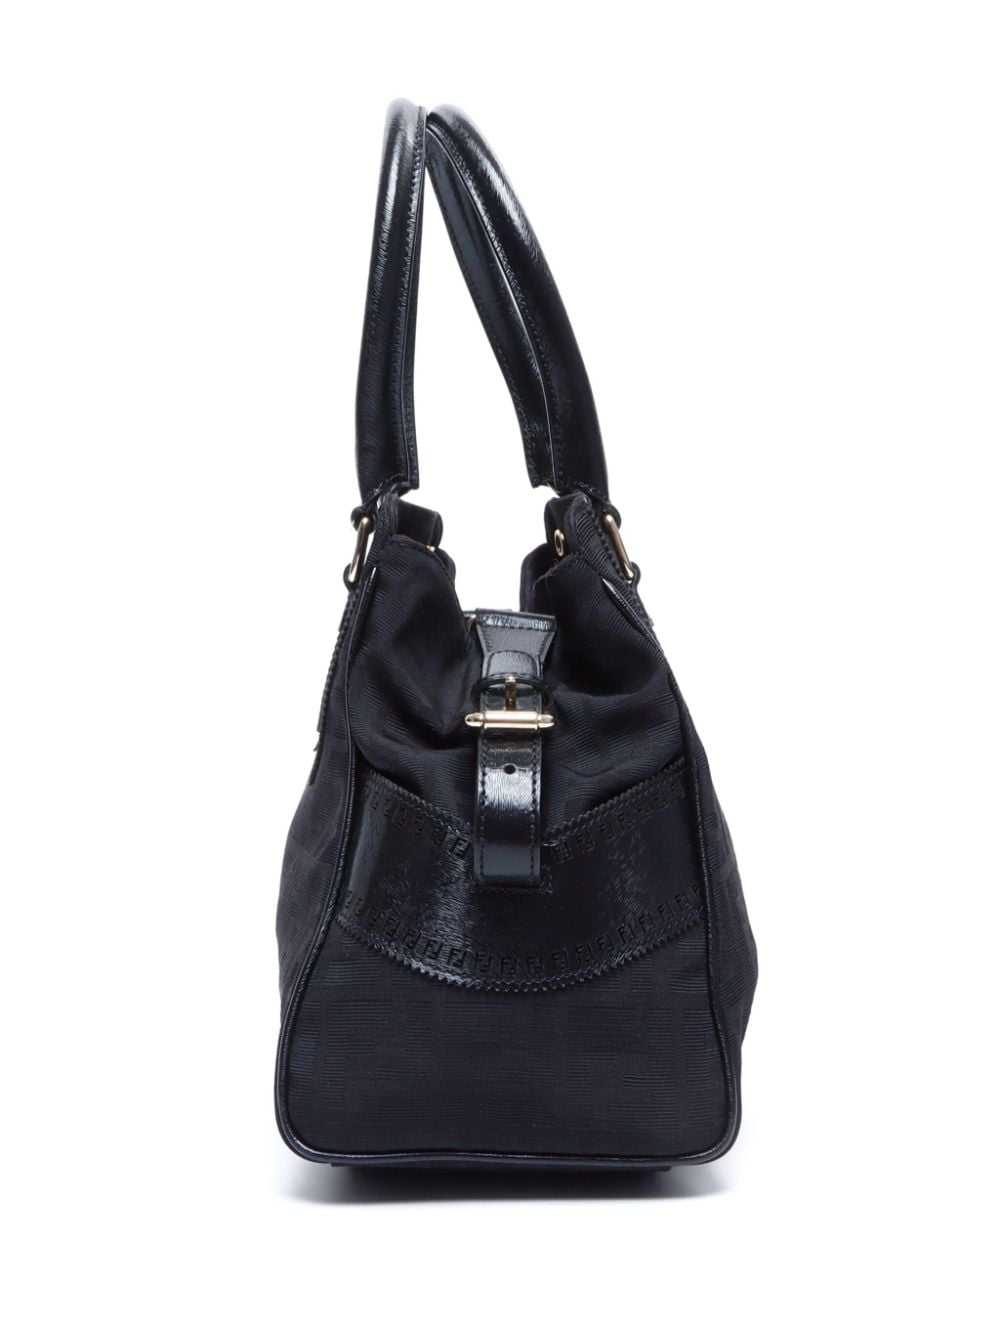 Fendi Pre-Owned Etniko Zucca handbag - Black - image 4